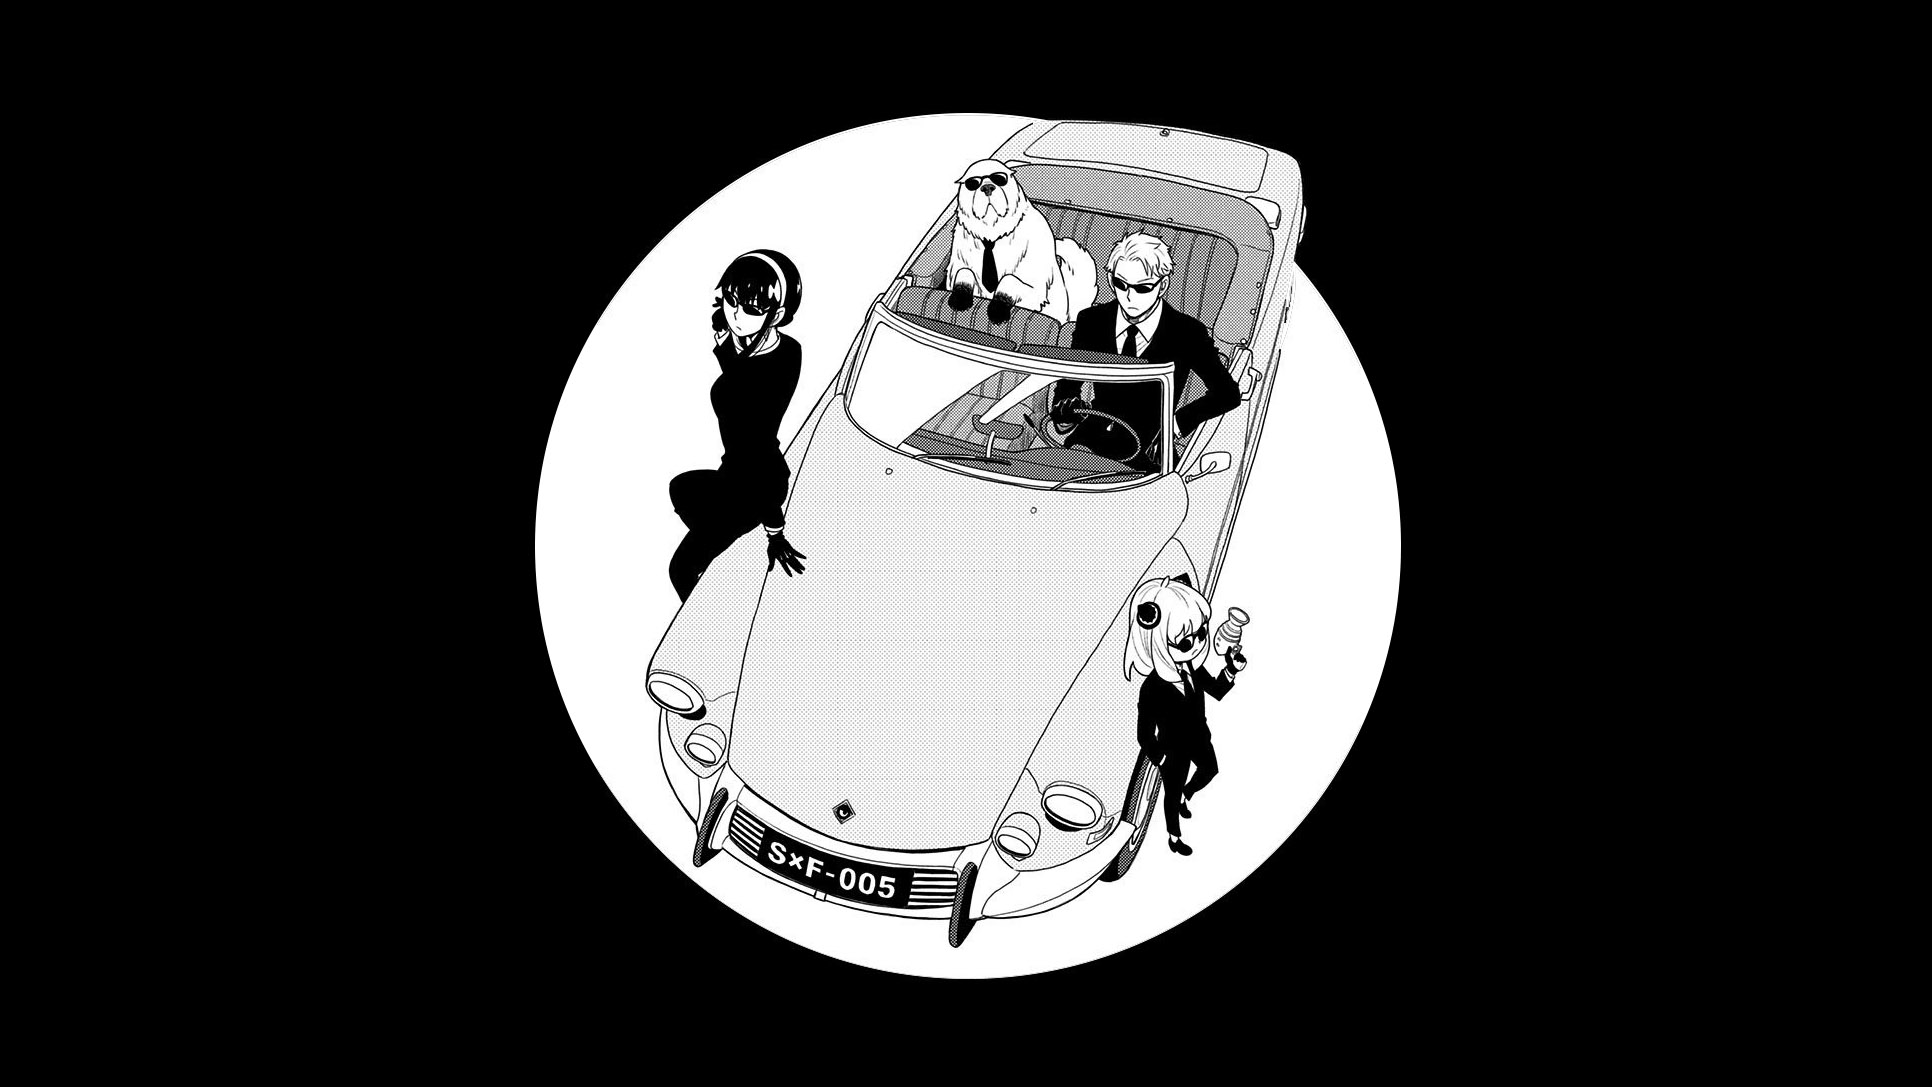 Une DS Cabriolet dans le manga Spy x Family